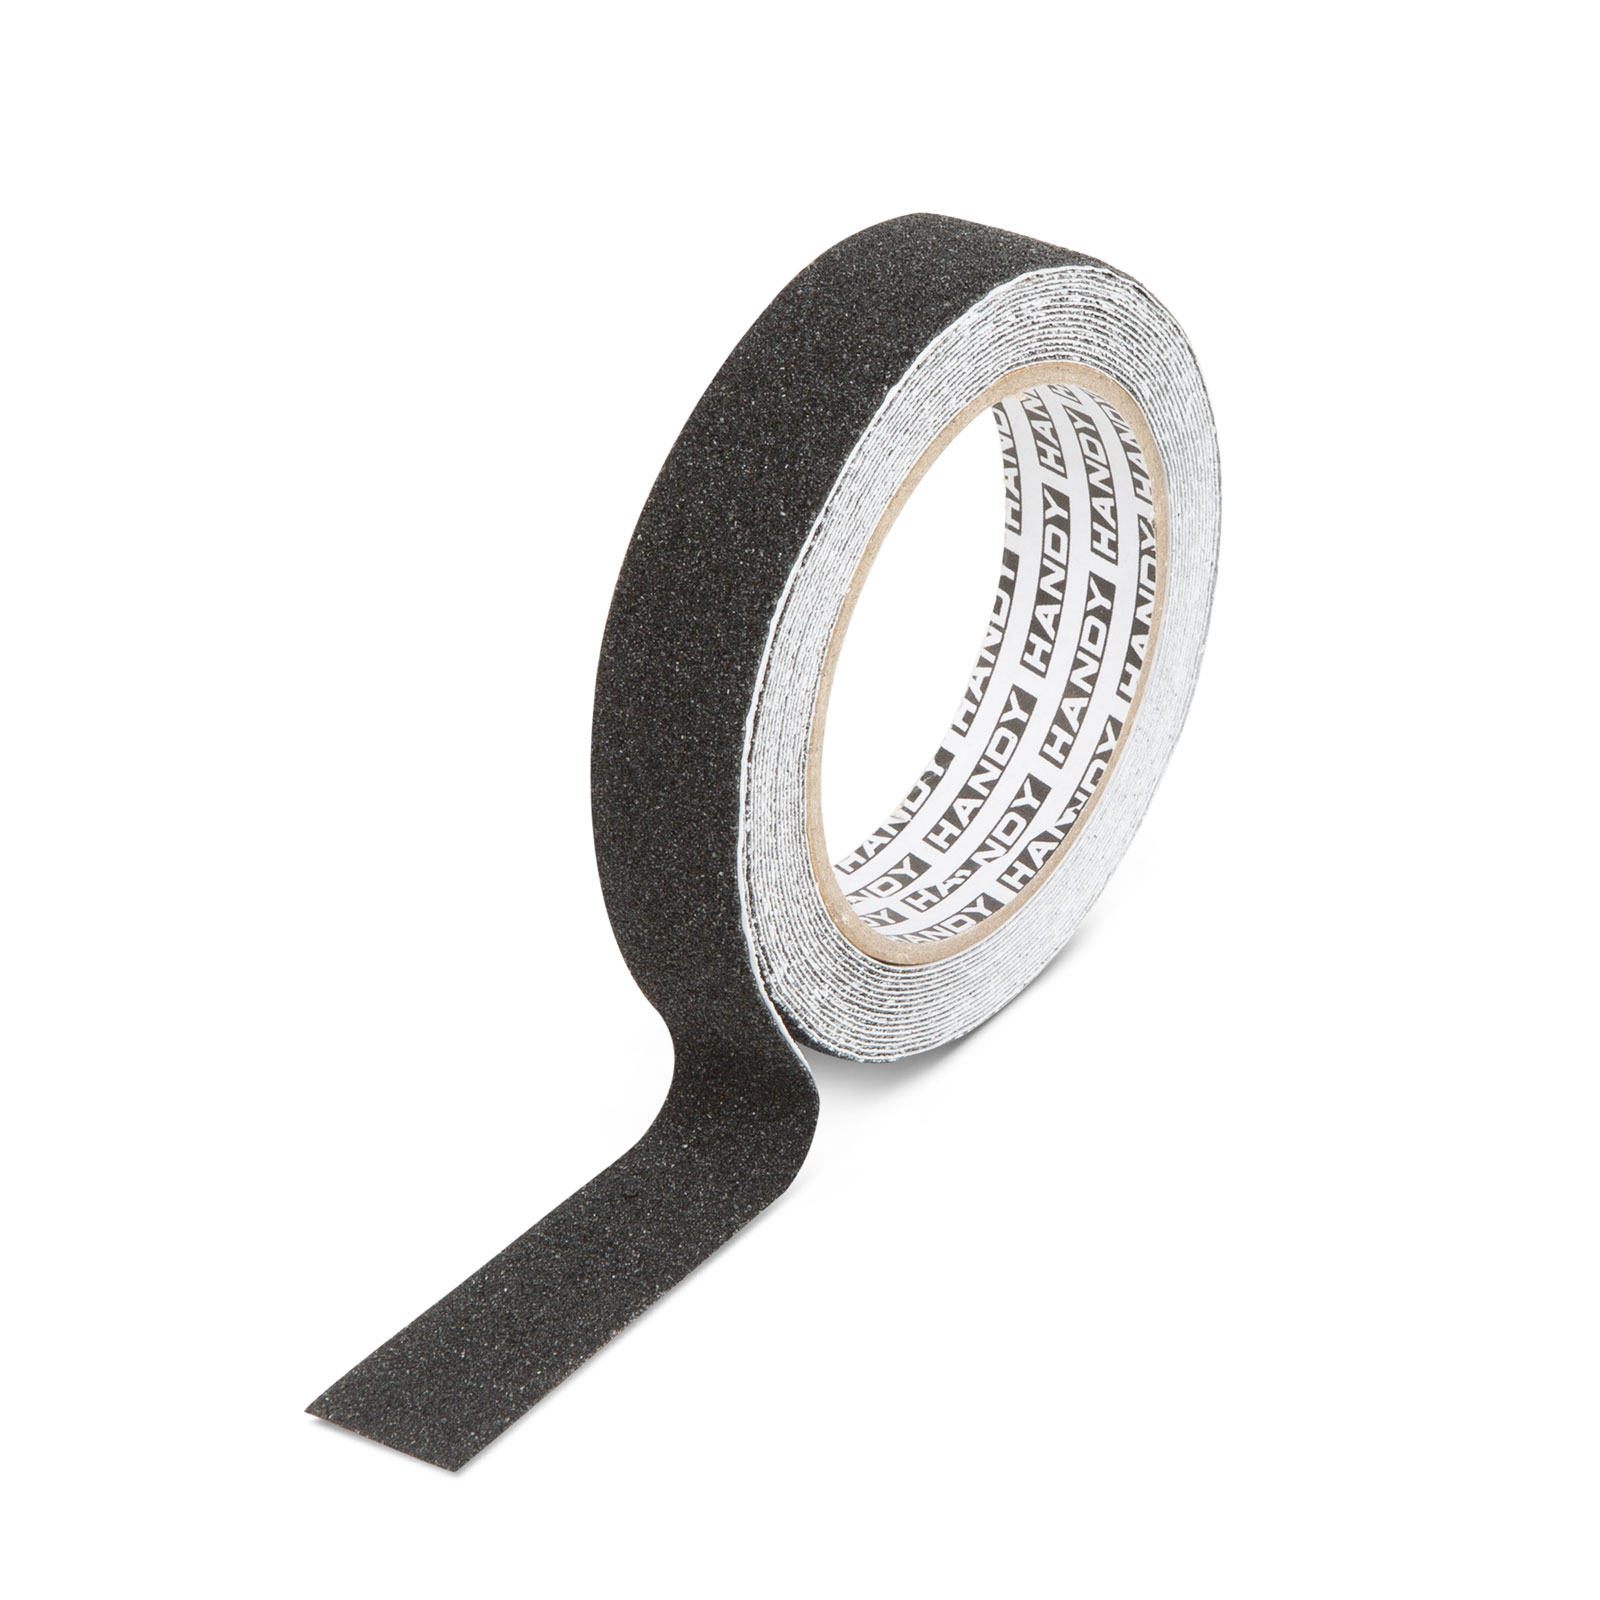 Adhesive tape - non-slip - 5 m x 25 mm - black thumb